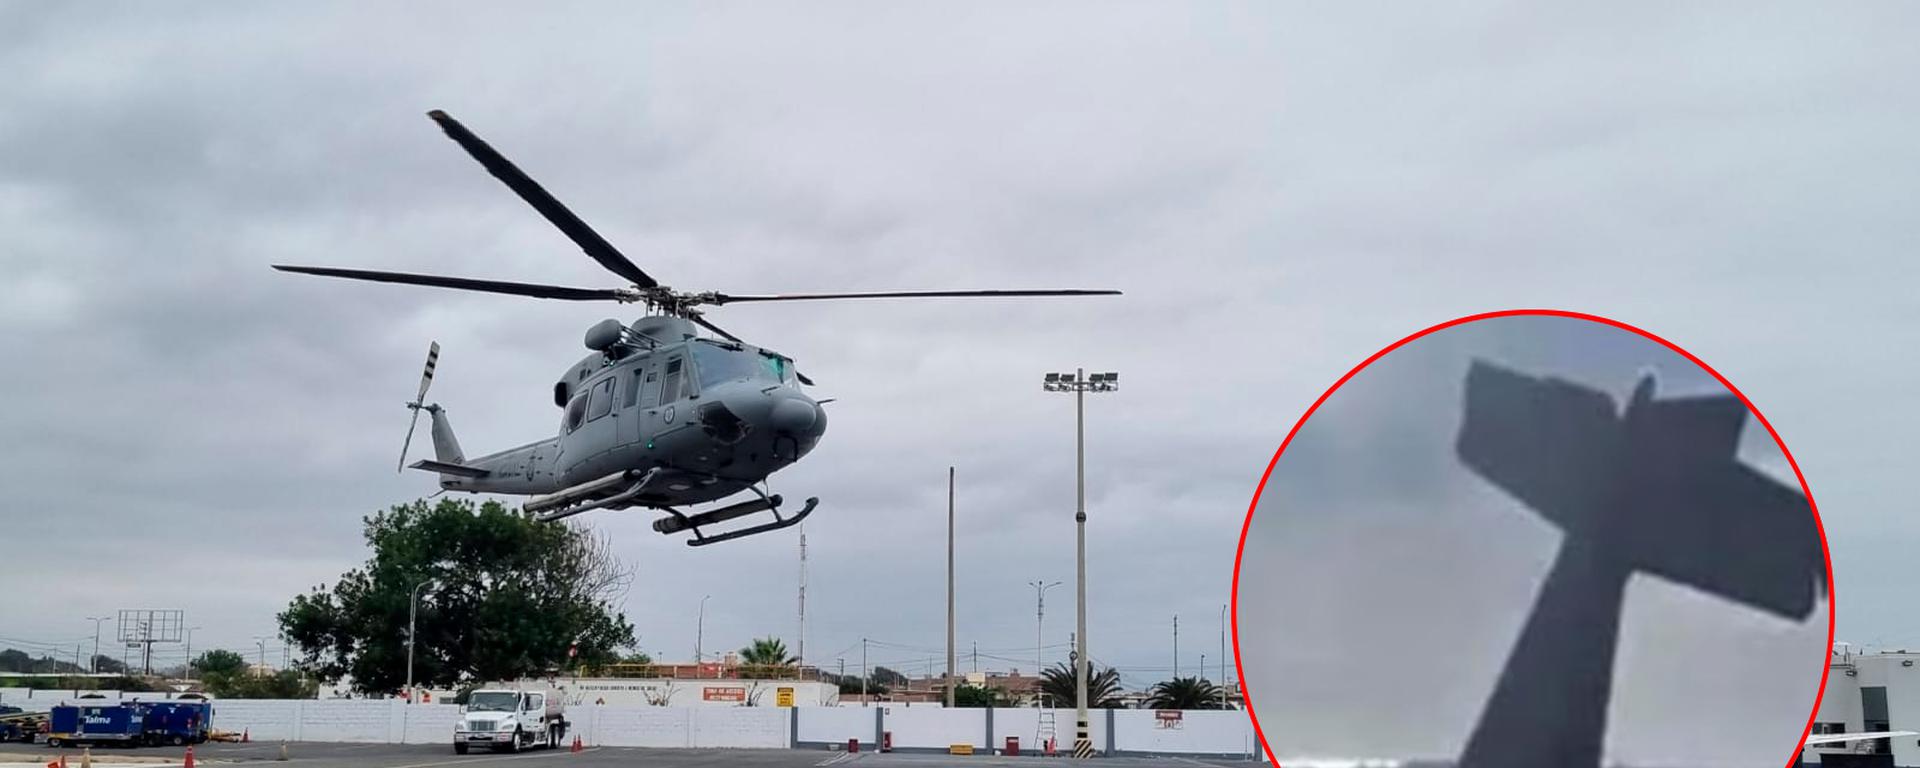 Tragedia aérea en Trujillo: operaciones de búsqueda y rescate continúan con cuatro aeronaves y patrulleros, ¿cómo están trabajando?